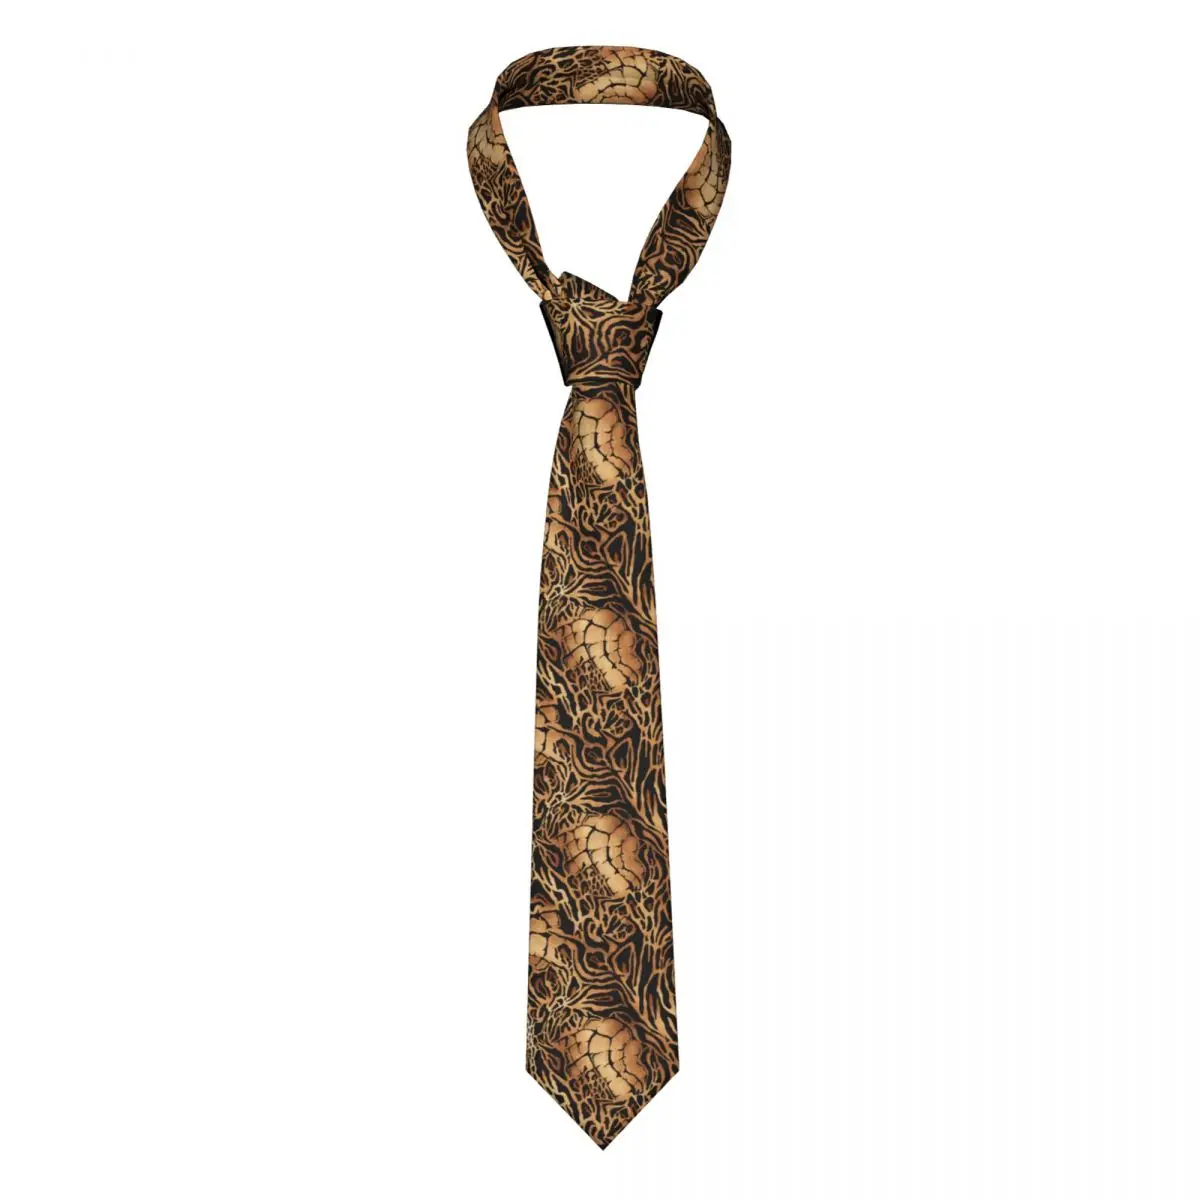 Мужской галстук, тонкий, обтягивающий, из кожи тигра, леопарда и крокодила, модный галстук, свободный стиль, мужской галстук, вечеринка, свадьба